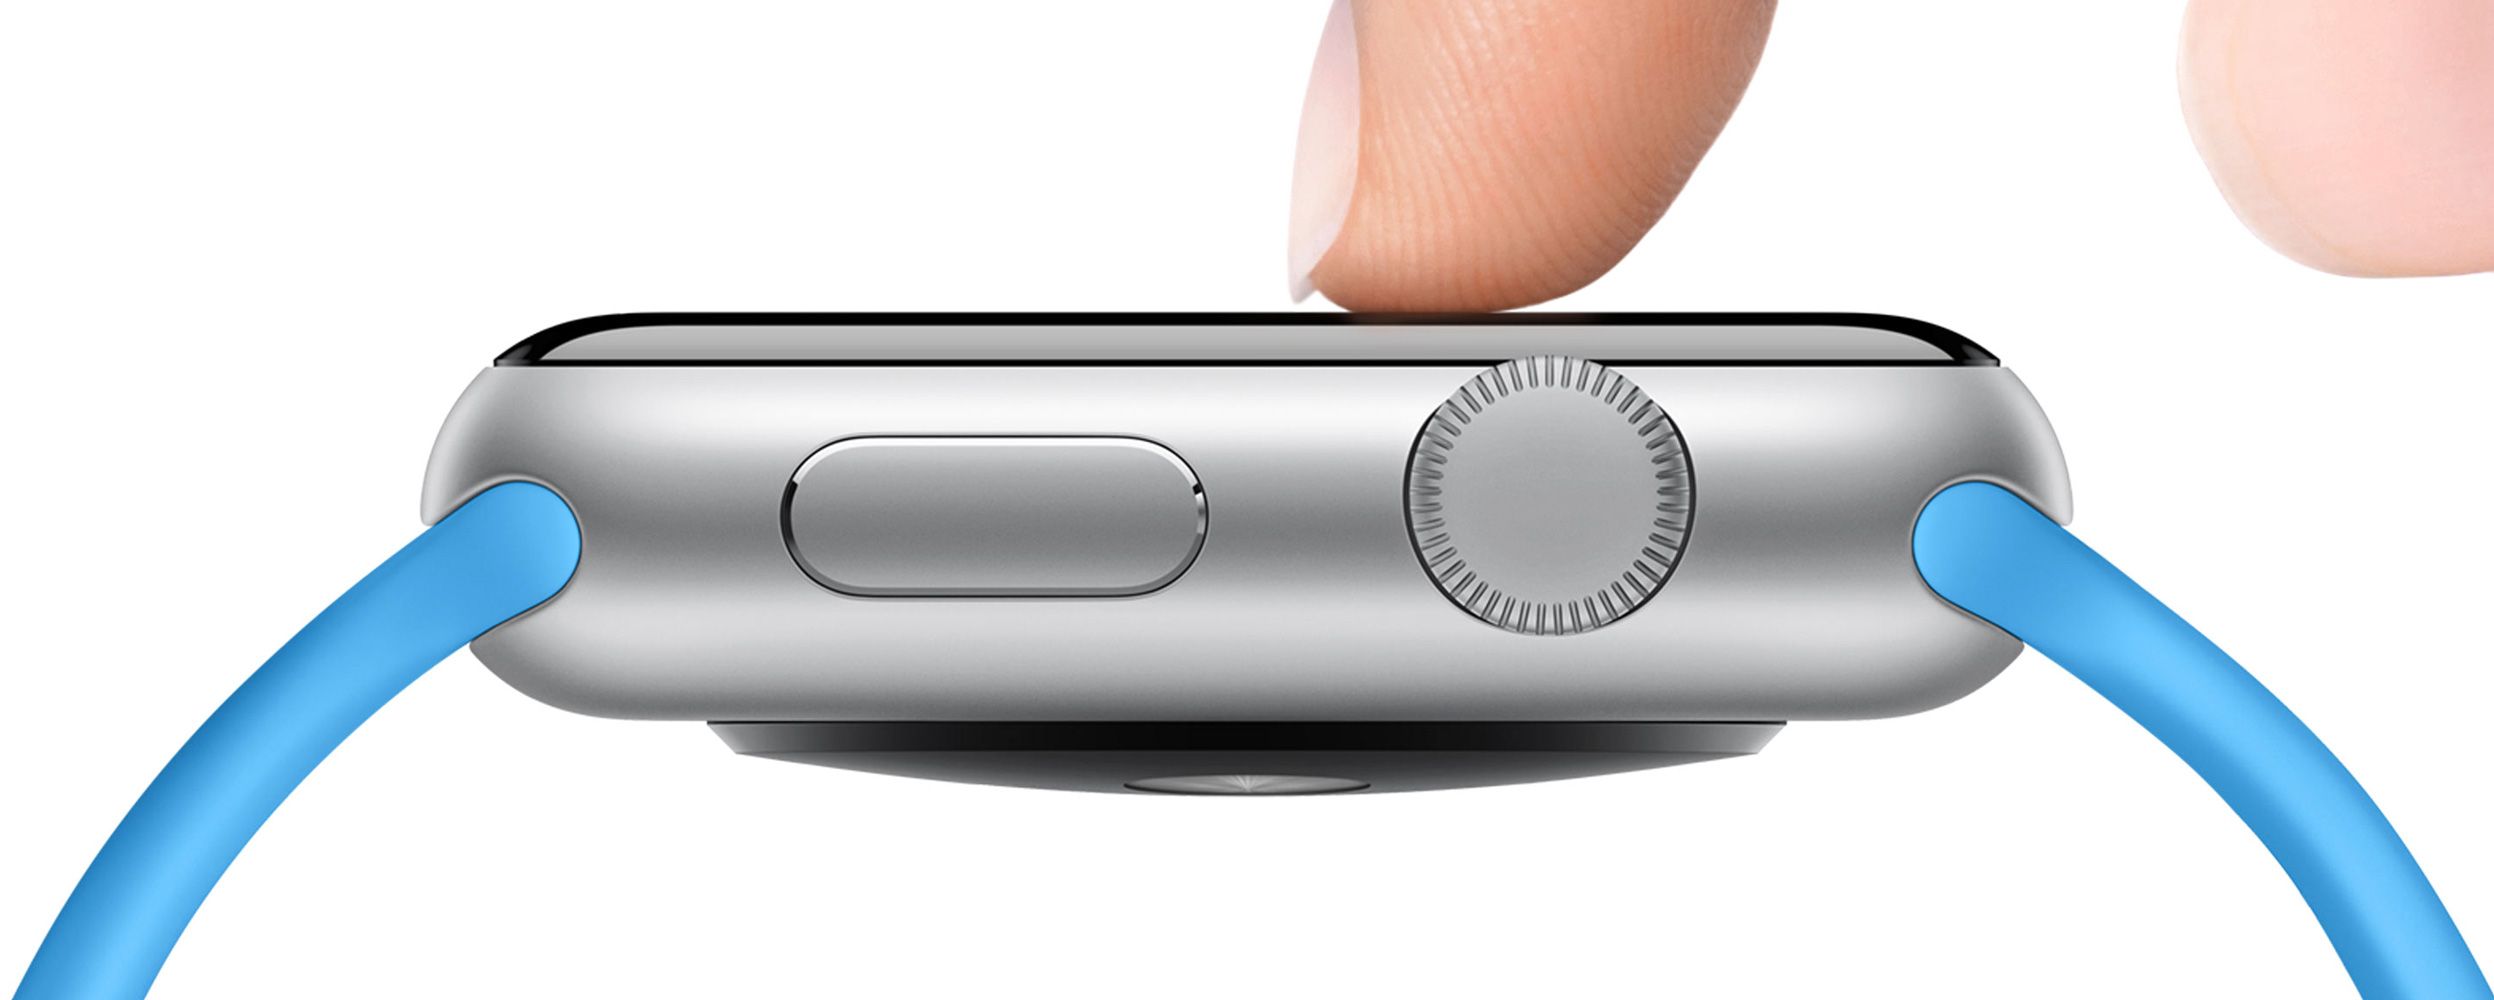 Force Touch đã được tích hợp lên Smart Watch của Apple